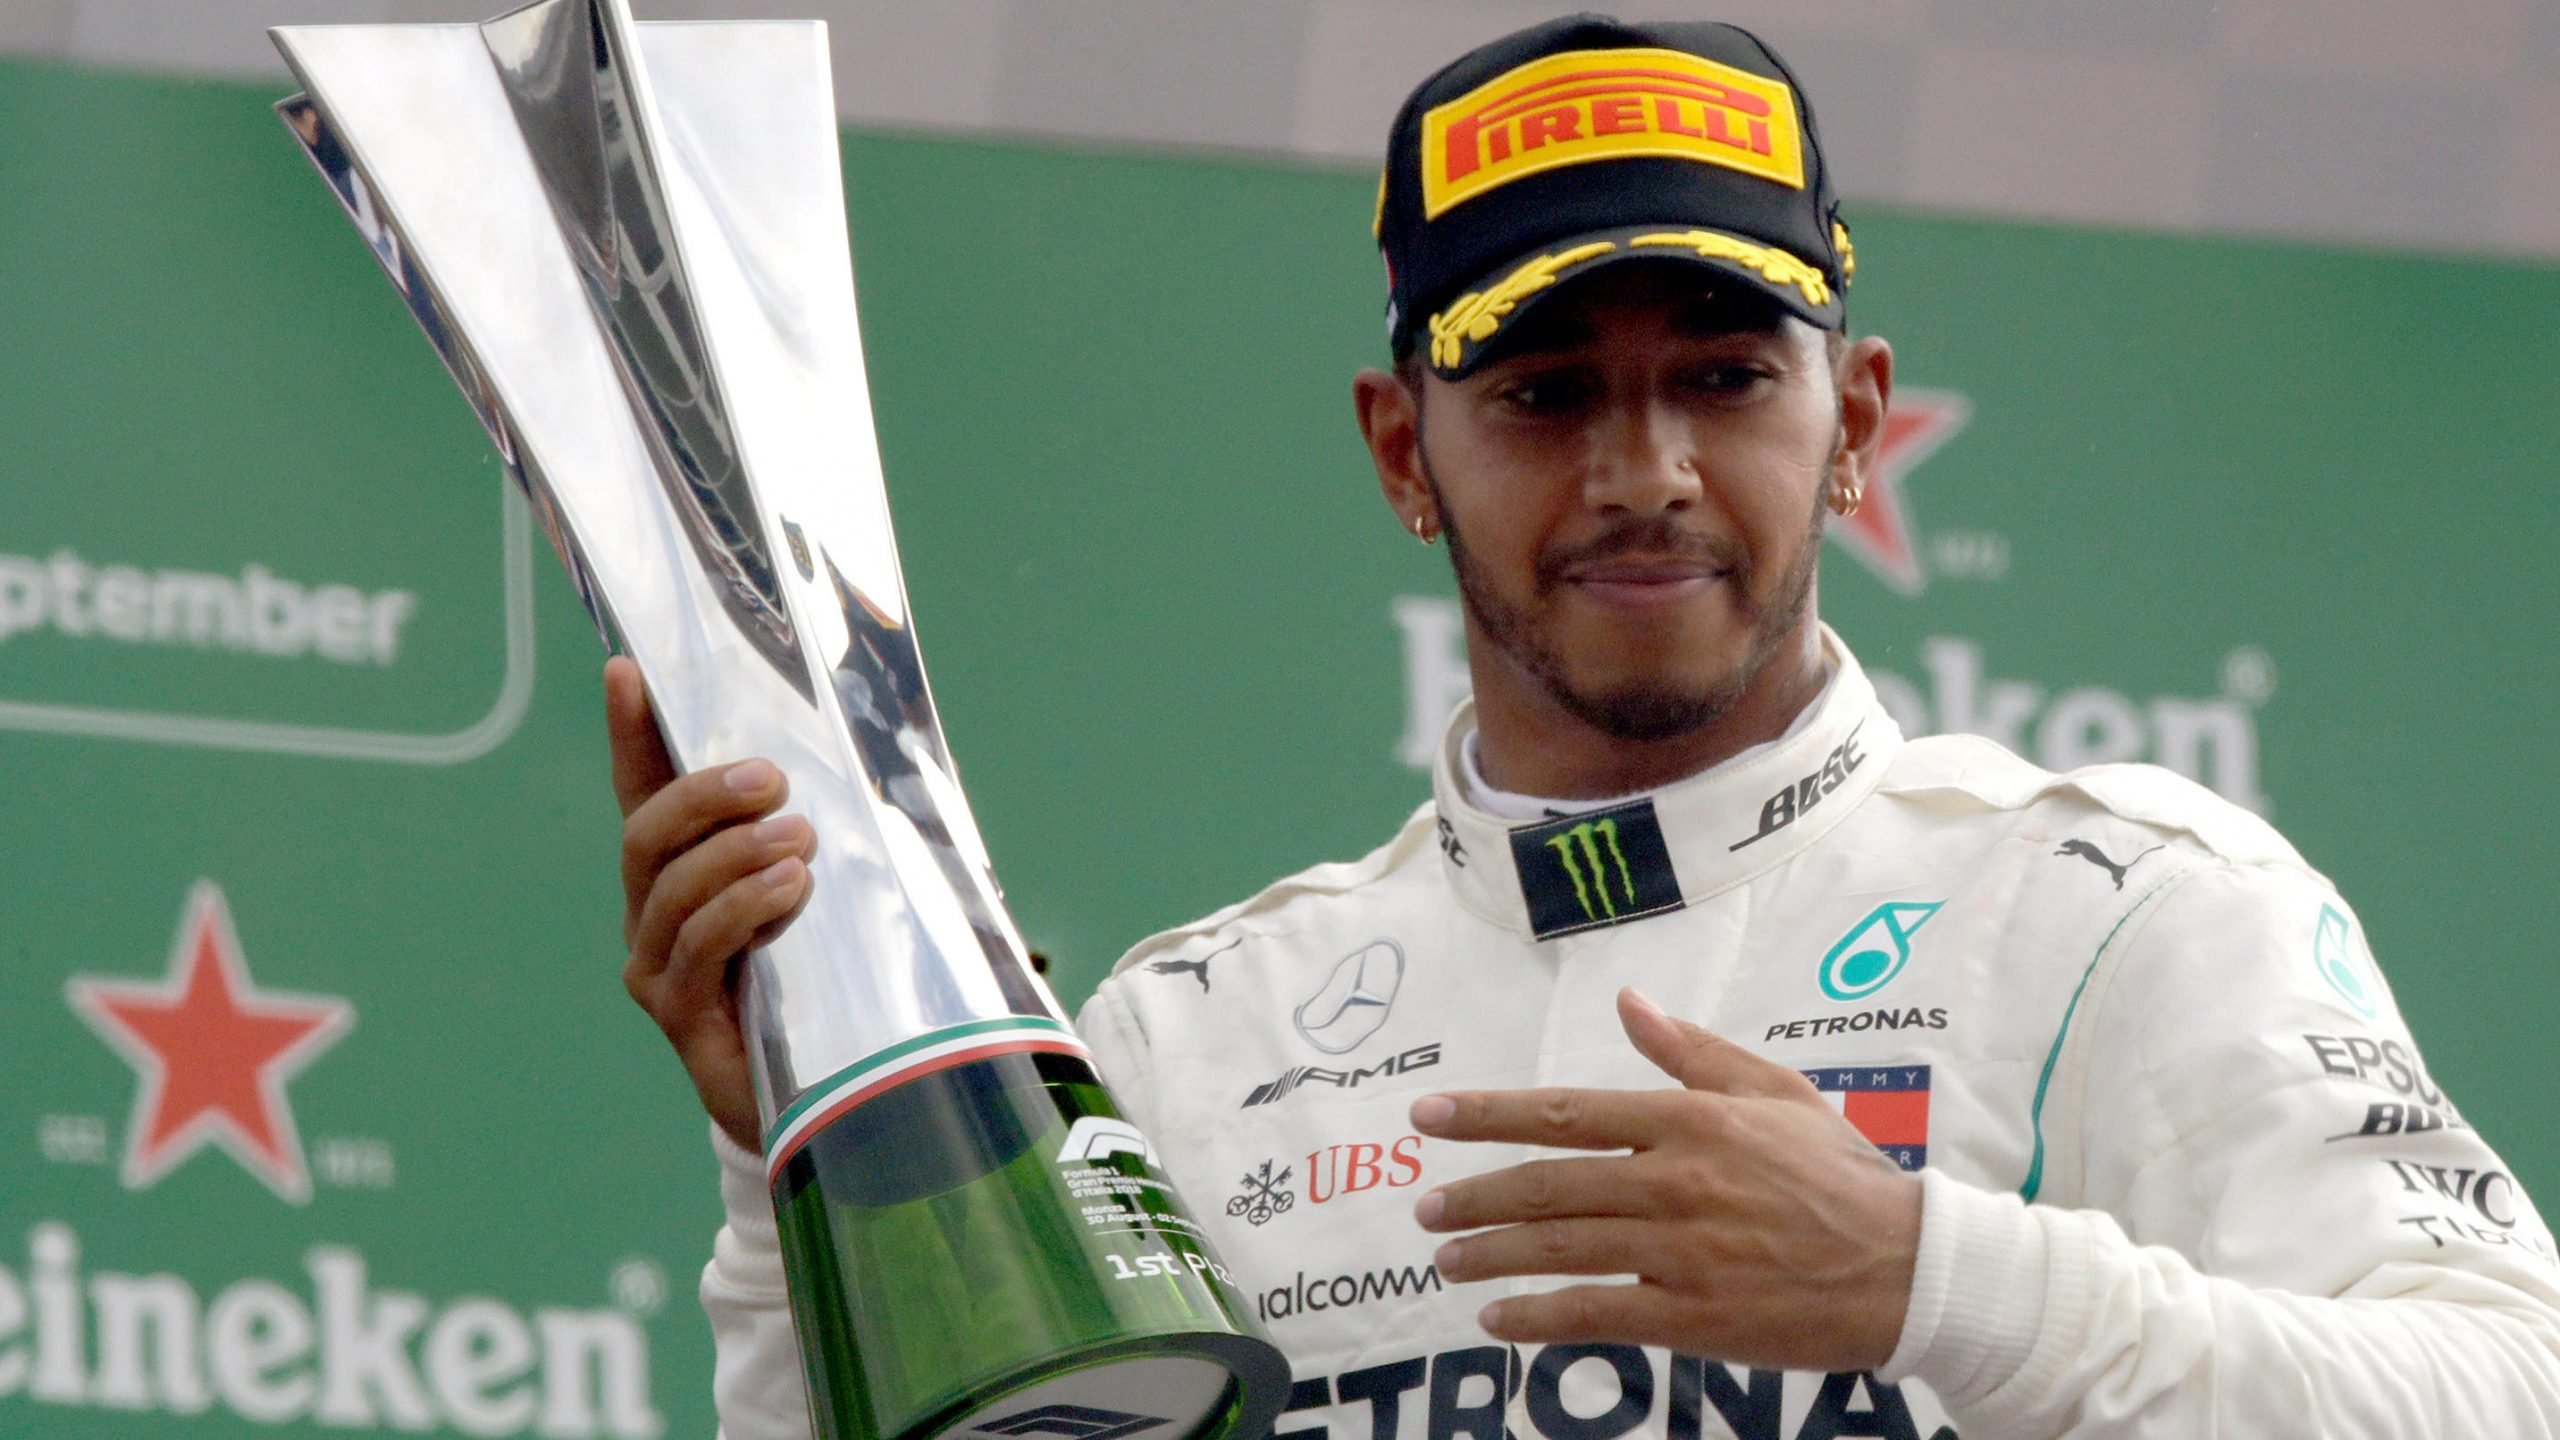 Lewis Hamilton feiert seinen Sieg in Monza|Zwischen Vettel und Hamilton kommt es in der ersten Runde zum Crash|Der Hockenheimring bietet 4.574 km Rennstrecke